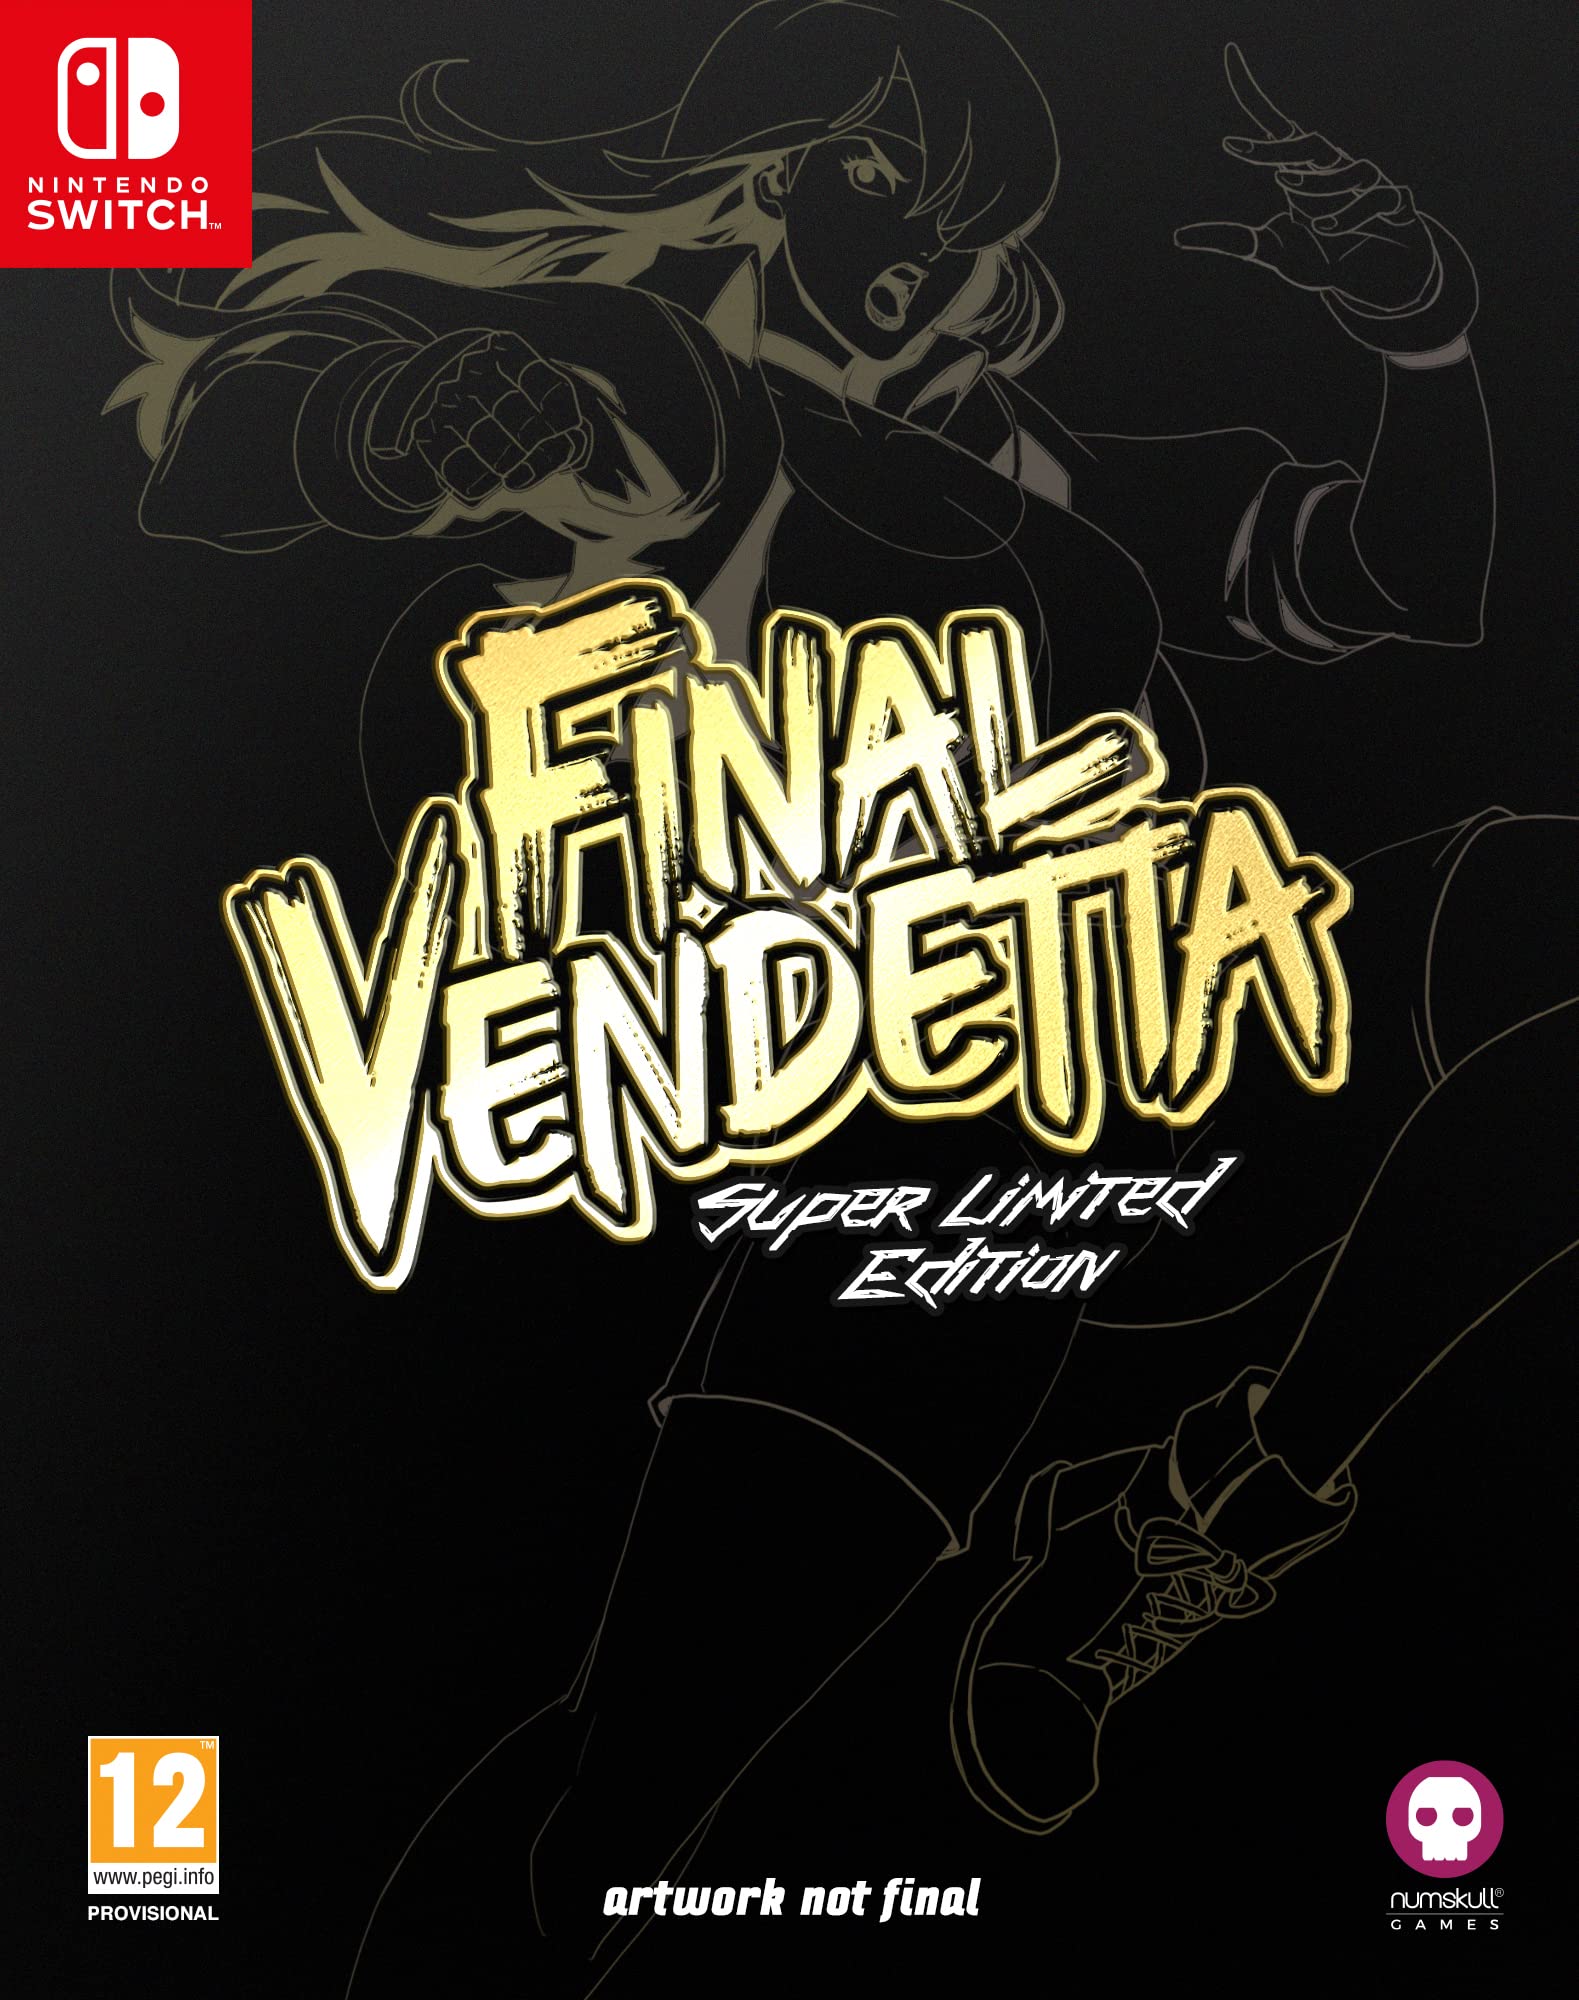 NUMSKULL Final Vendetta - Super Limited Edition